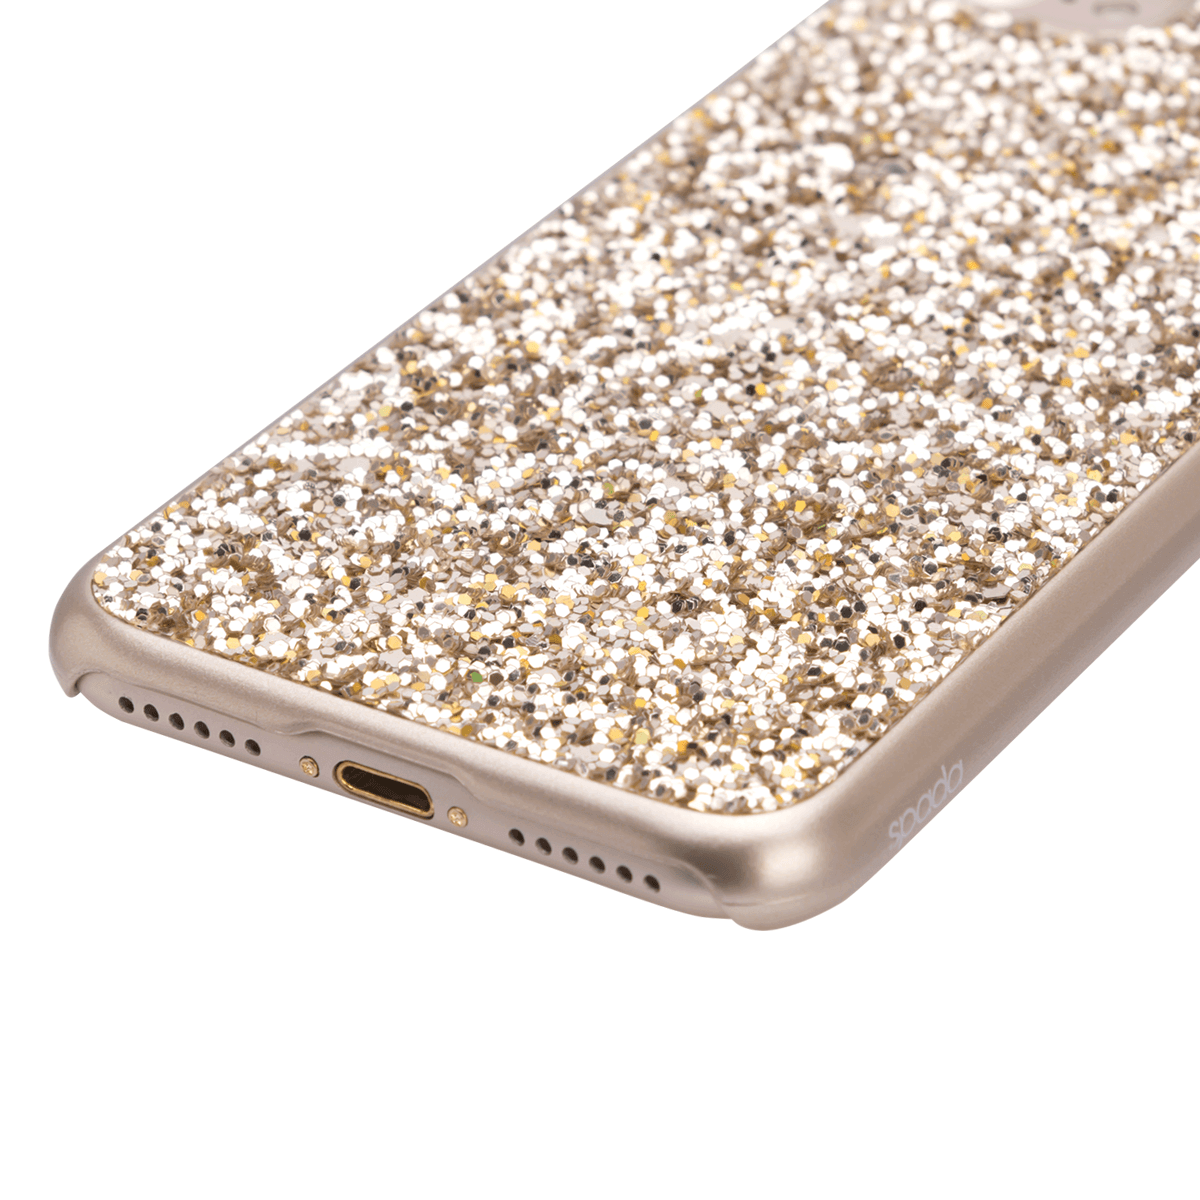 iPhone 7/8 için spada Glitter Gold renk Kapak